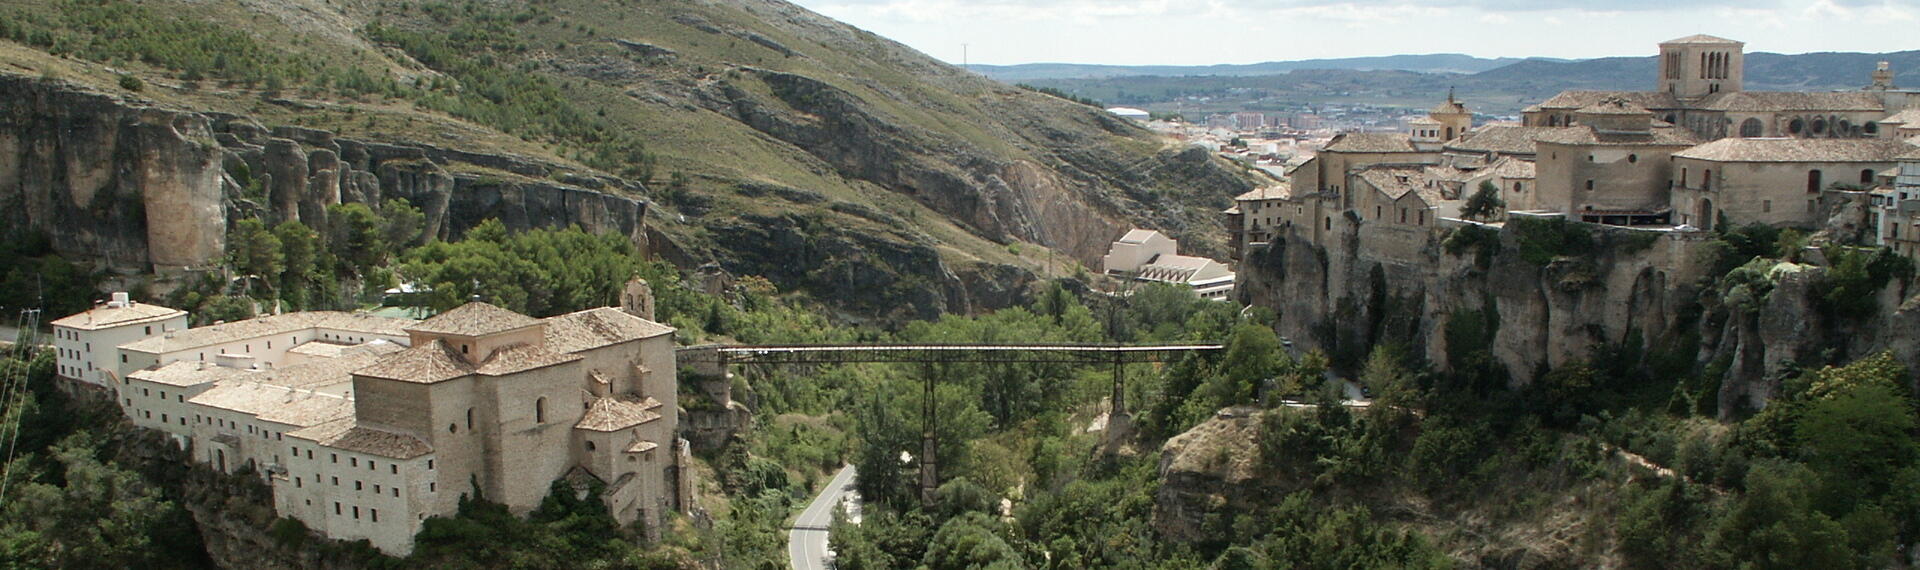 Cuenca, Spanien